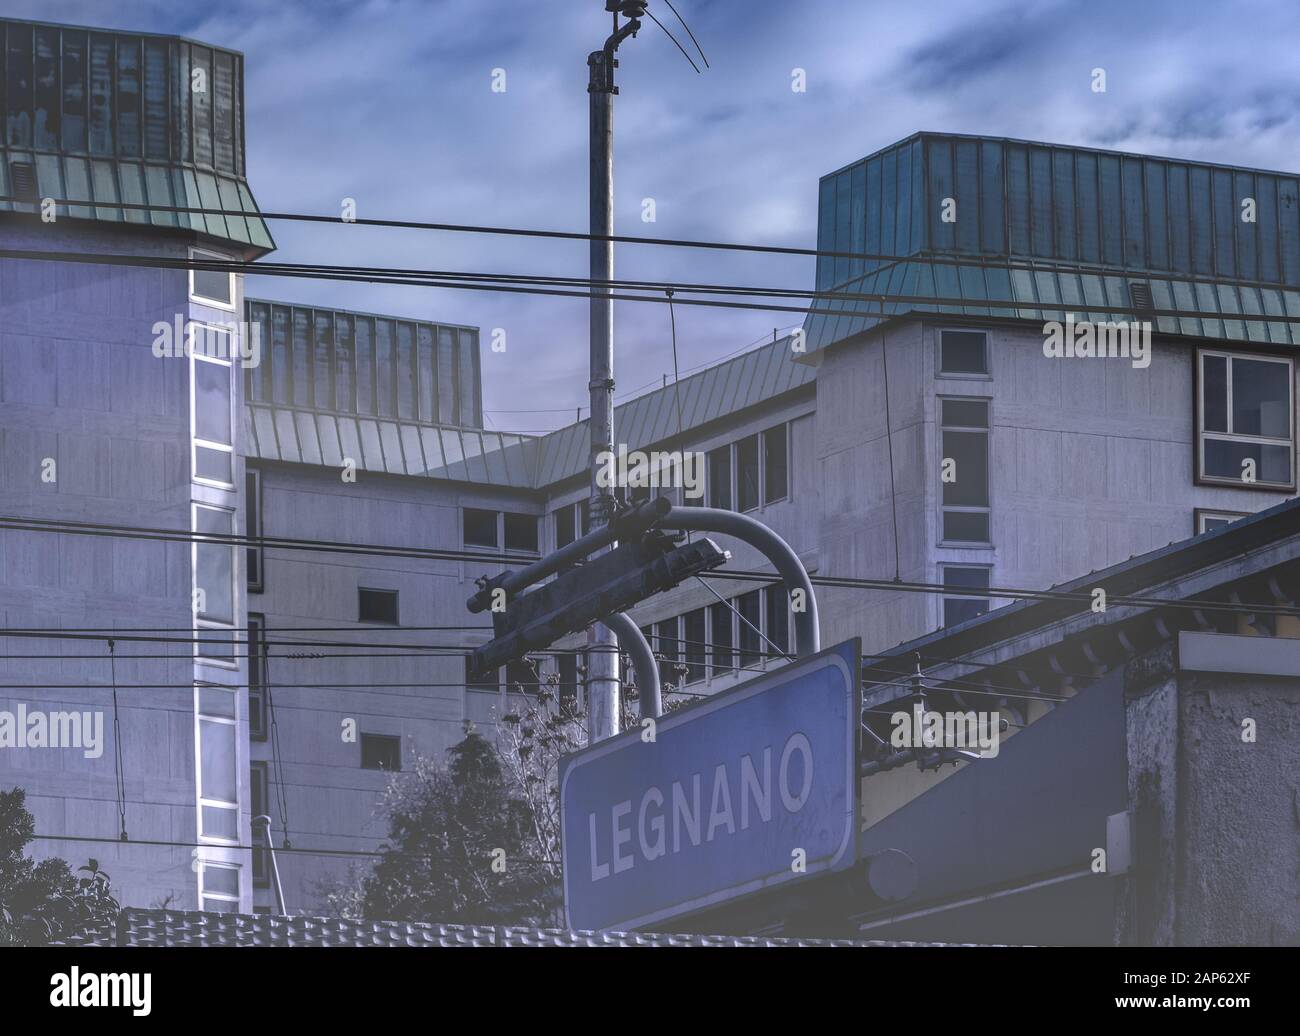 Melden Sie sich im Bahnhof Legnano an, und geben Sie den Namen der Stadt an Stockfoto